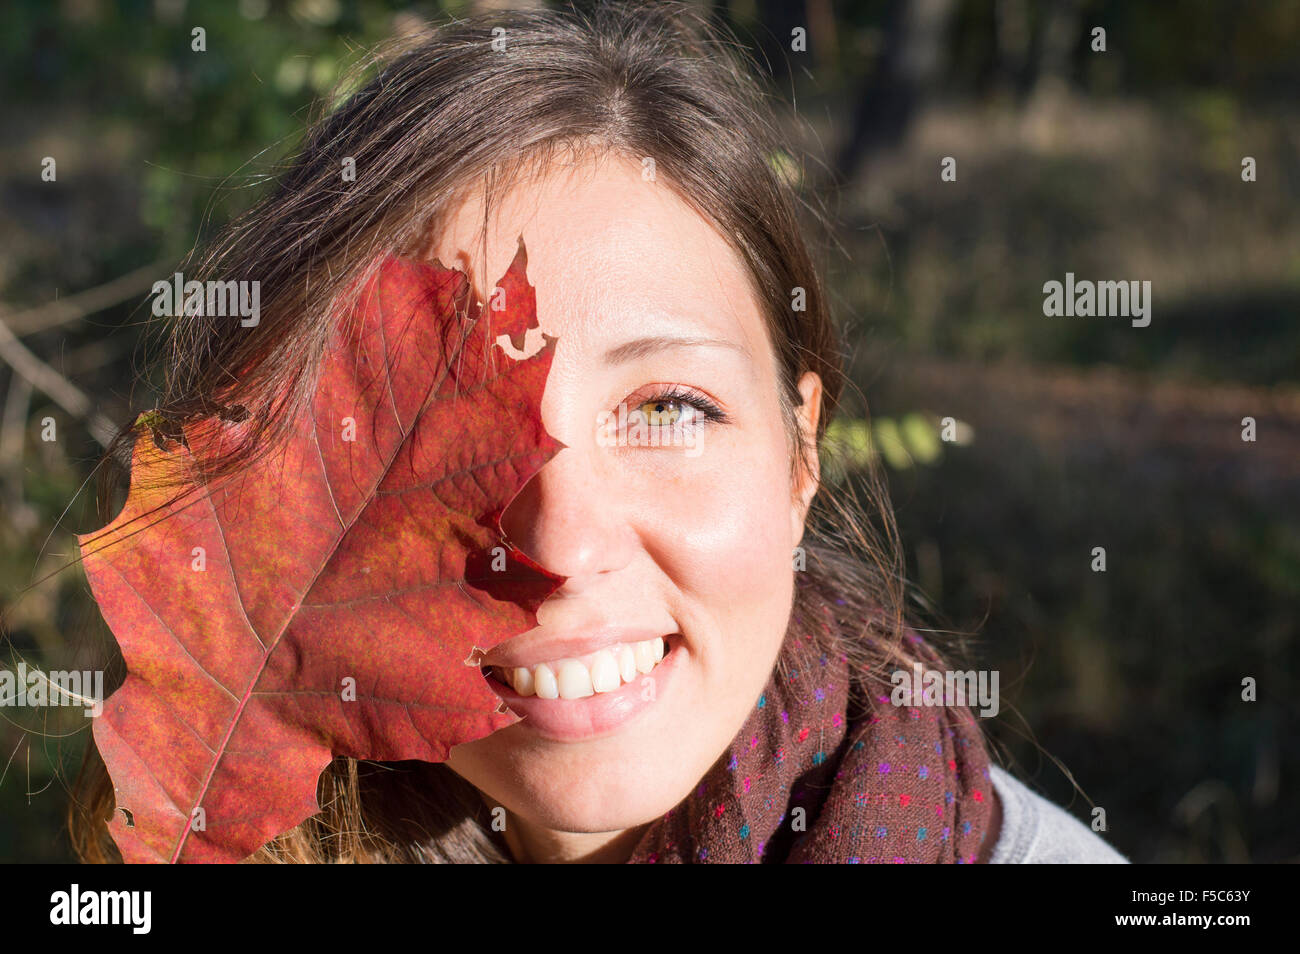 Retrato de belleza de otoño al aire libre. Chica con hermosos ojos verdes holding red hoja de otoño sobre su cara en el parque Foto de stock